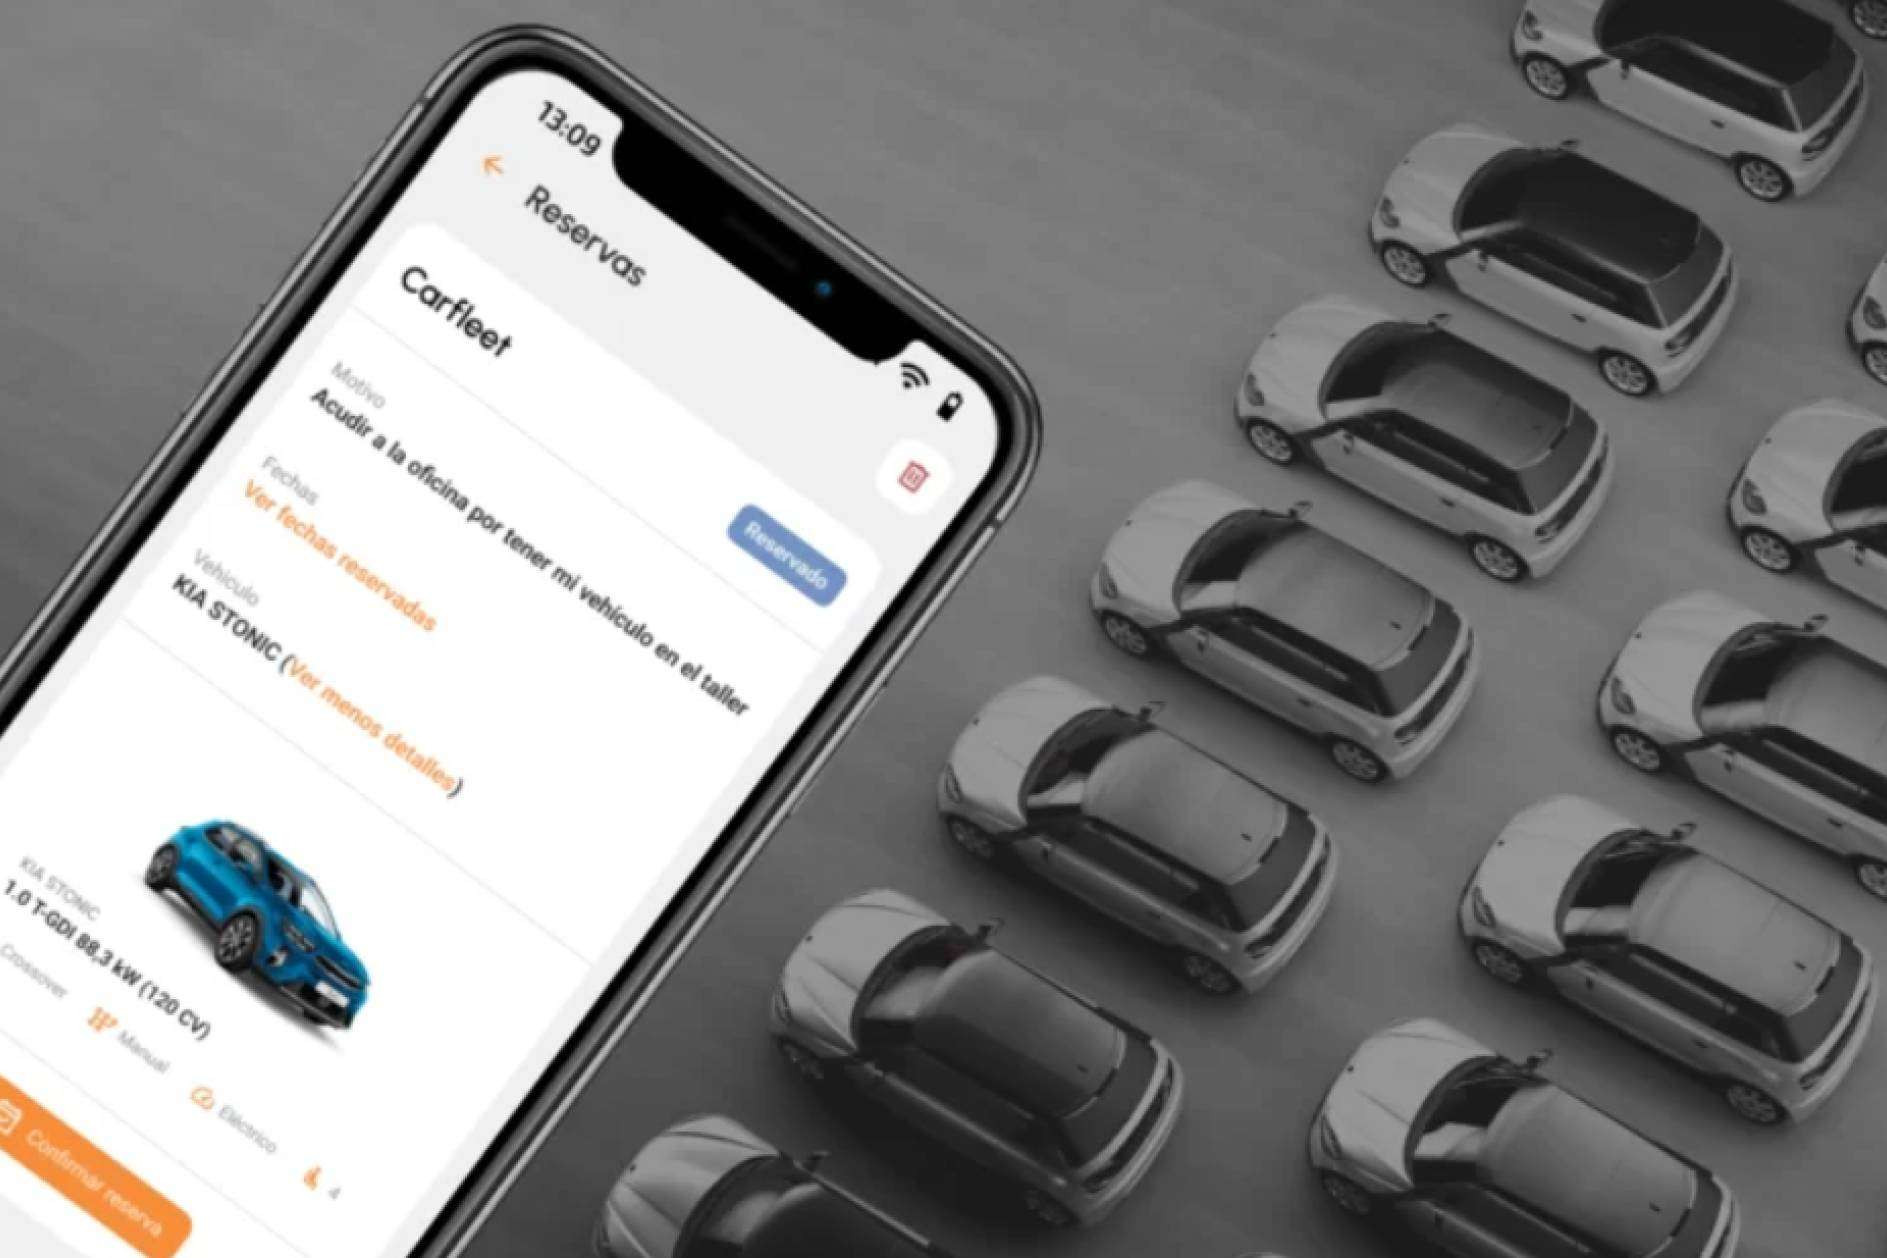  El módulo gestión de flota de vehículos en su versión Hybo 4.0 de la marca Hybo será lanzado al mercado próximamente 